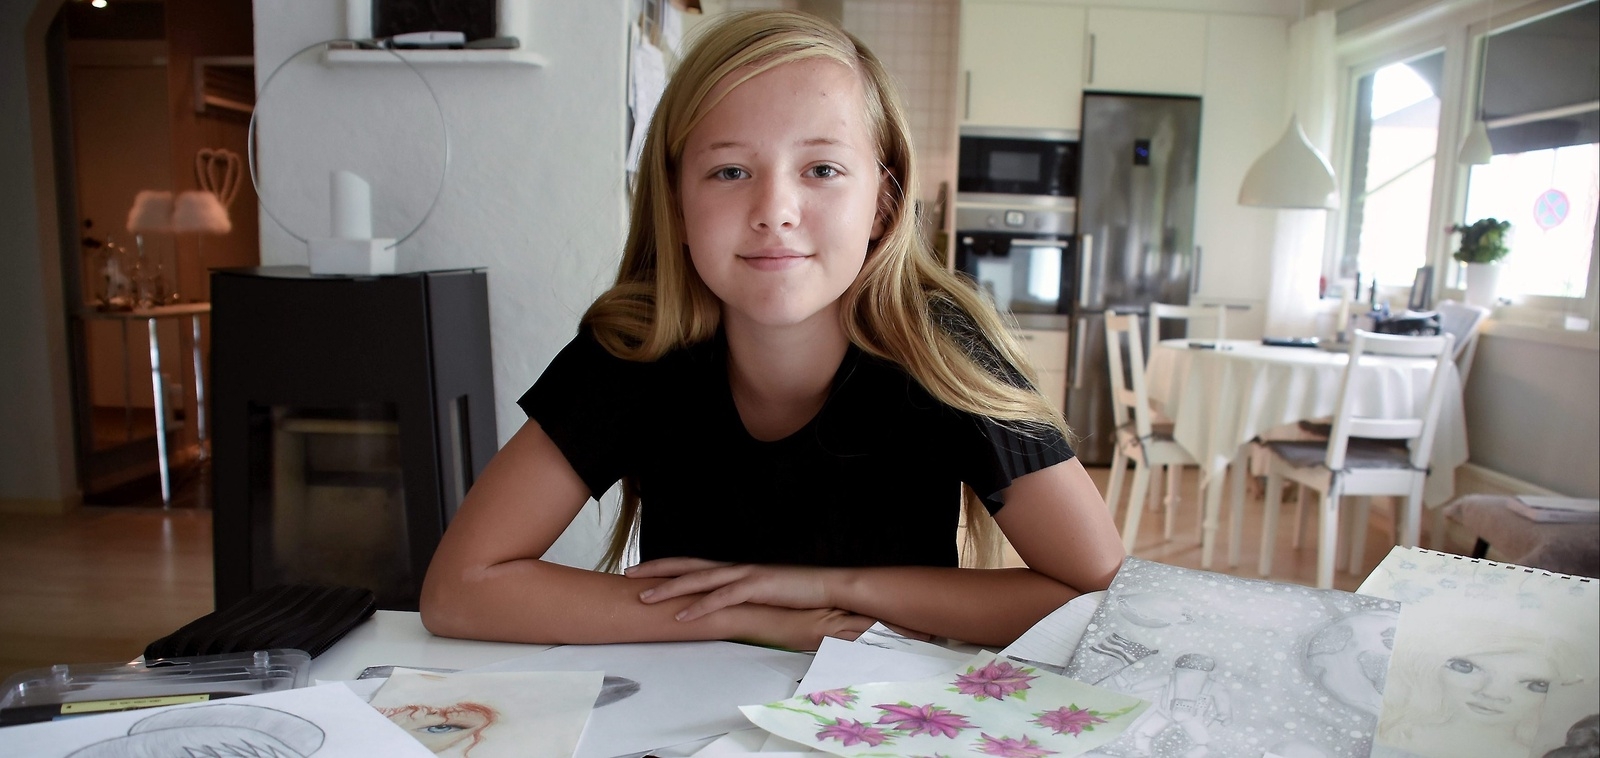 Ellen Bernhardsson 11 år från Osby har alltid älskat att rita.
Foto: Helén Fingalsson